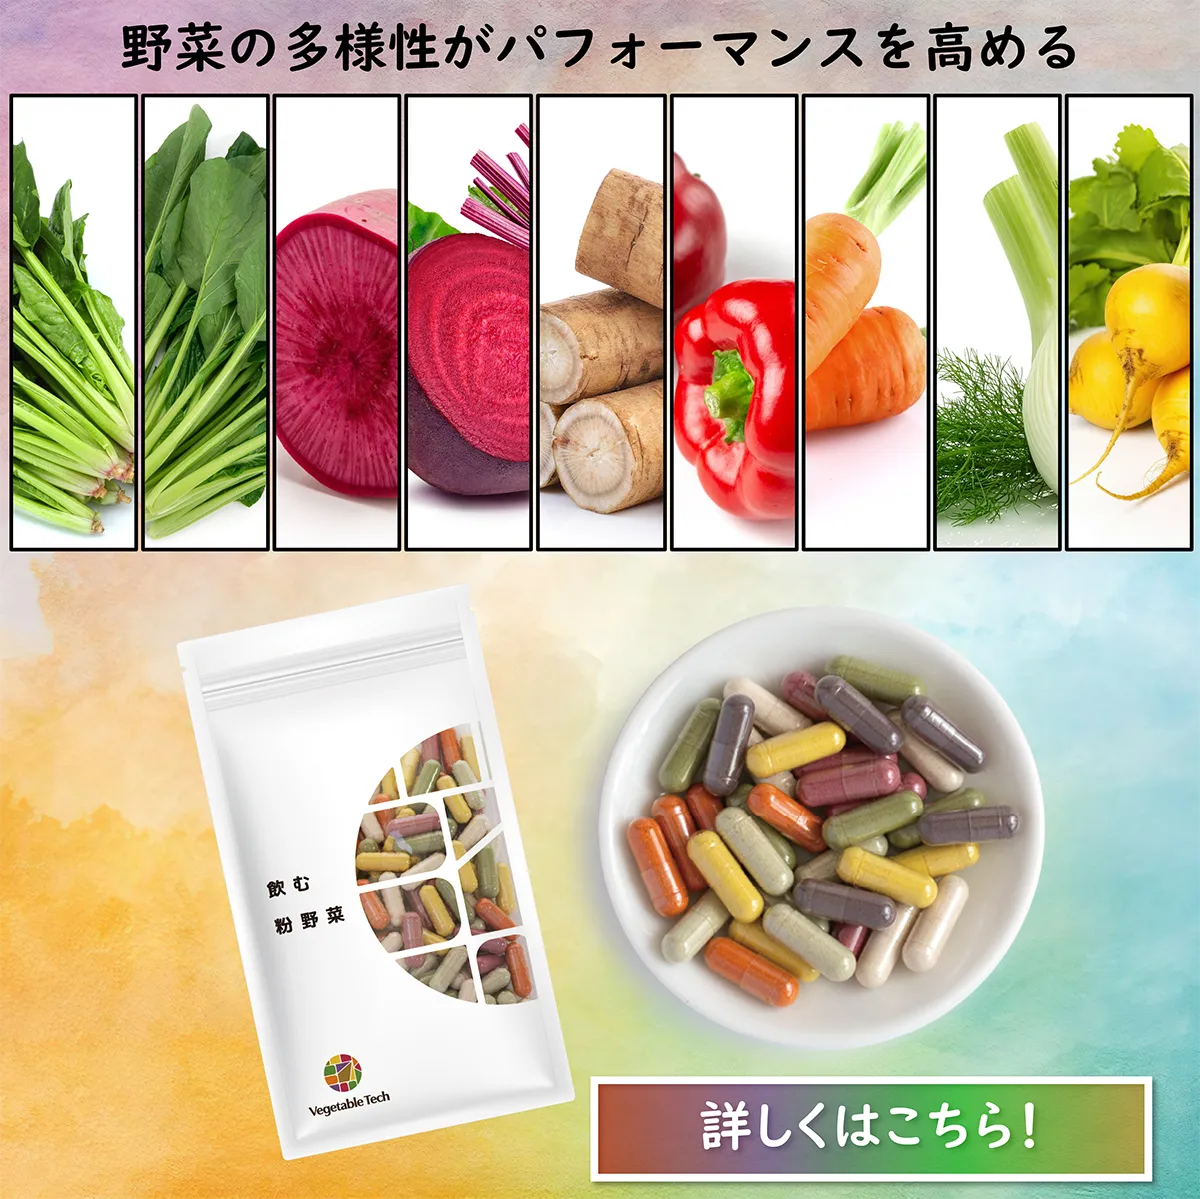 9つの野菜